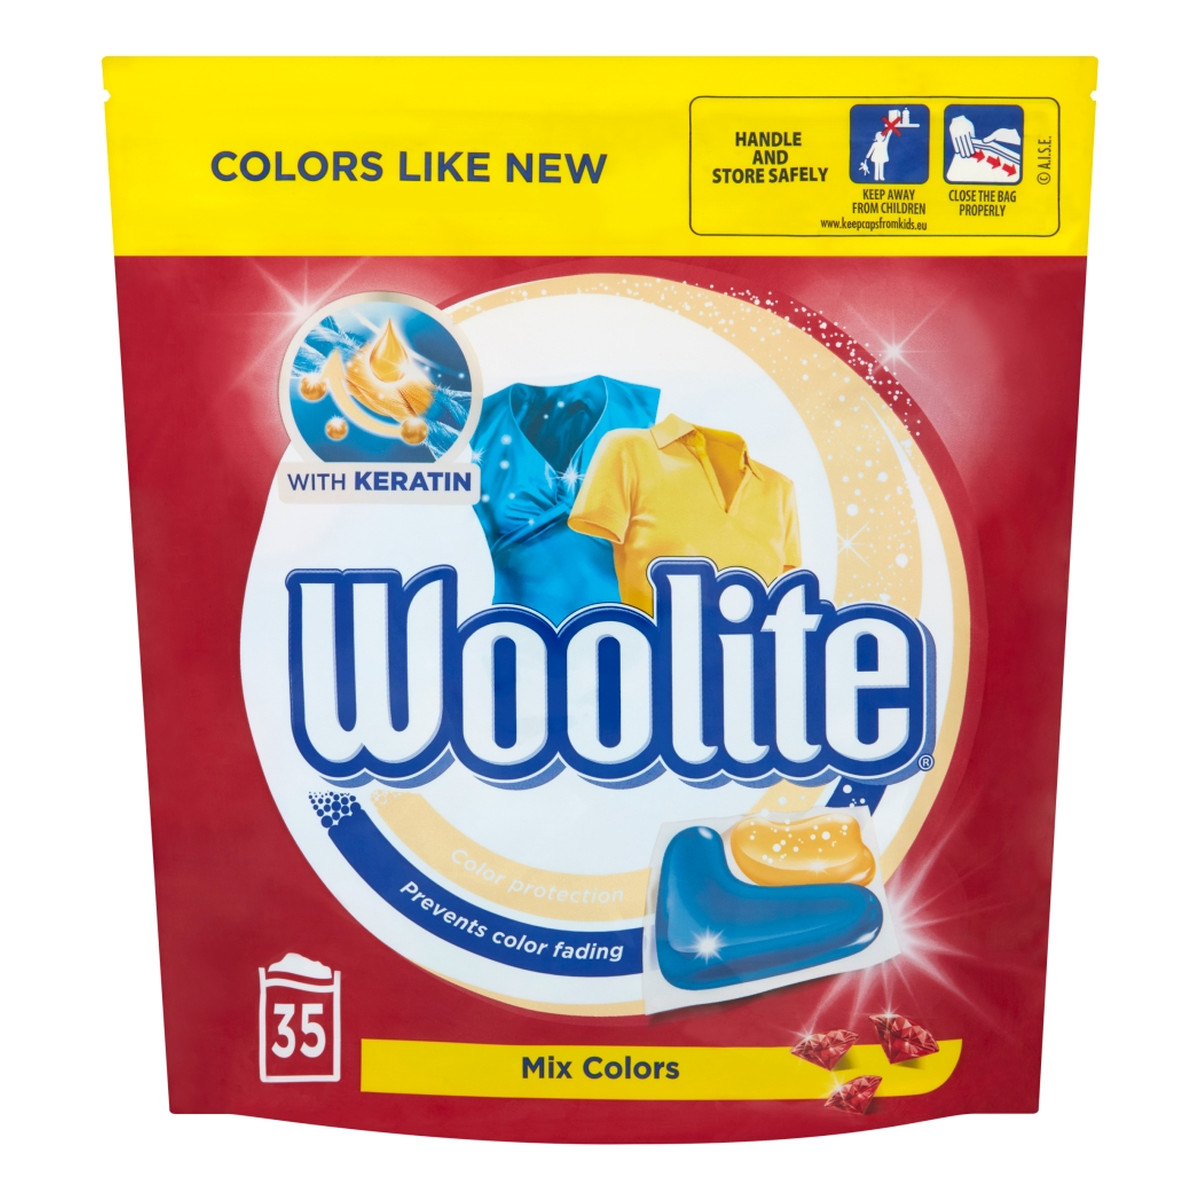 Woolite Mix Colors kapsułki do prania ochrona koloru z keratyną 35szt